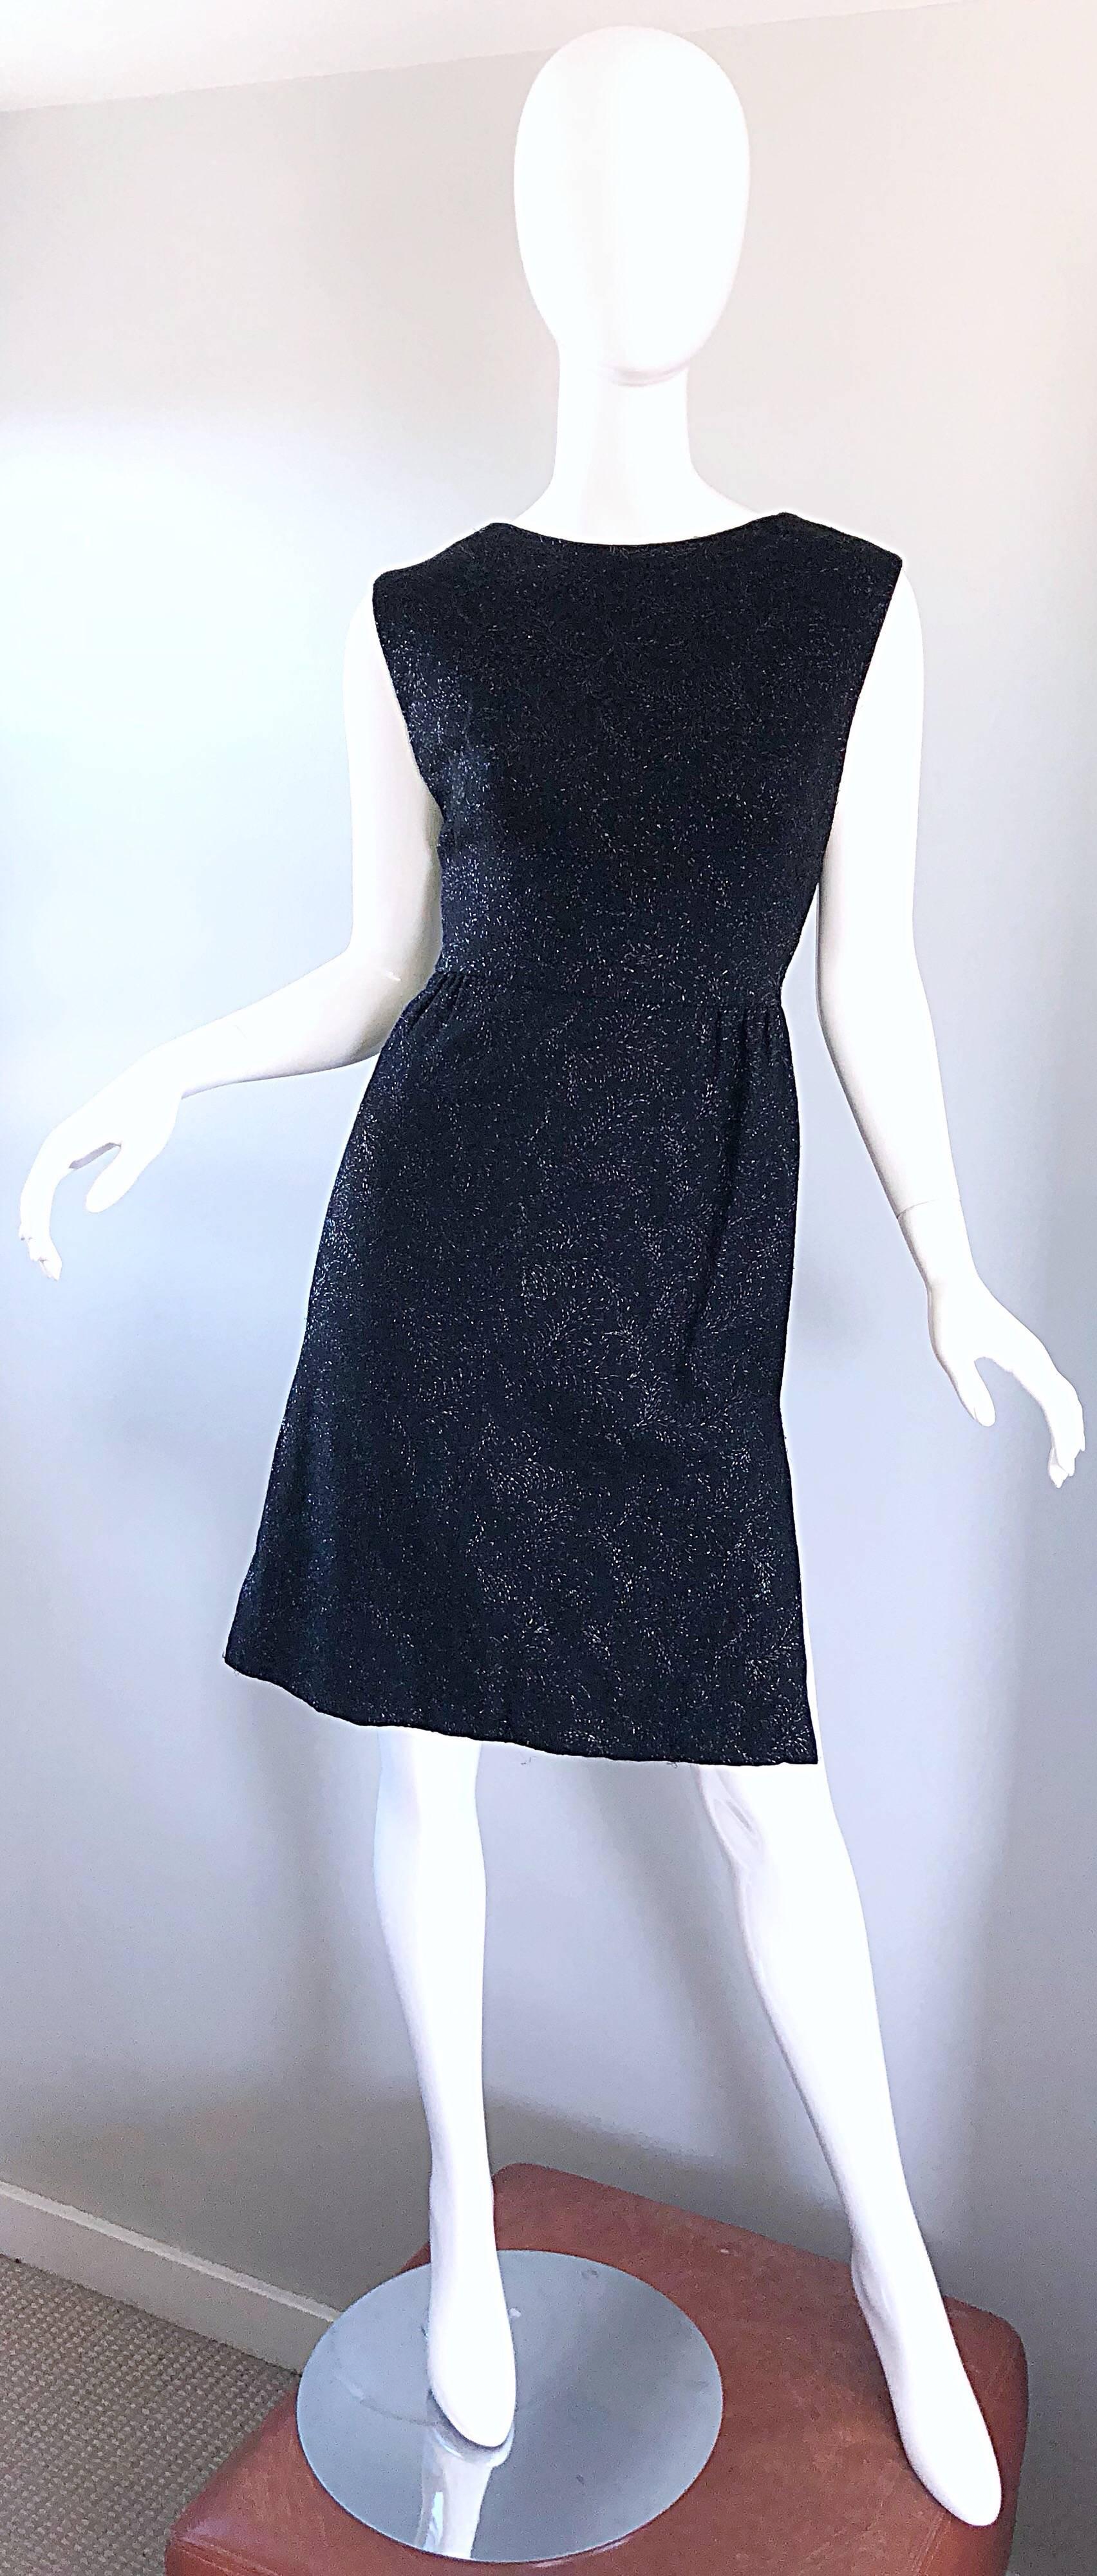 Petite robe noire HENRY ROSENFELD des années 1960 ! Il ne s'agit pas d'un boudin ordinaire : Les fils métalliques noirs sont présents tout au long du vêtement et ajoutent une touche d'excitation ! Entièrement doublé. Fermeture à glissière